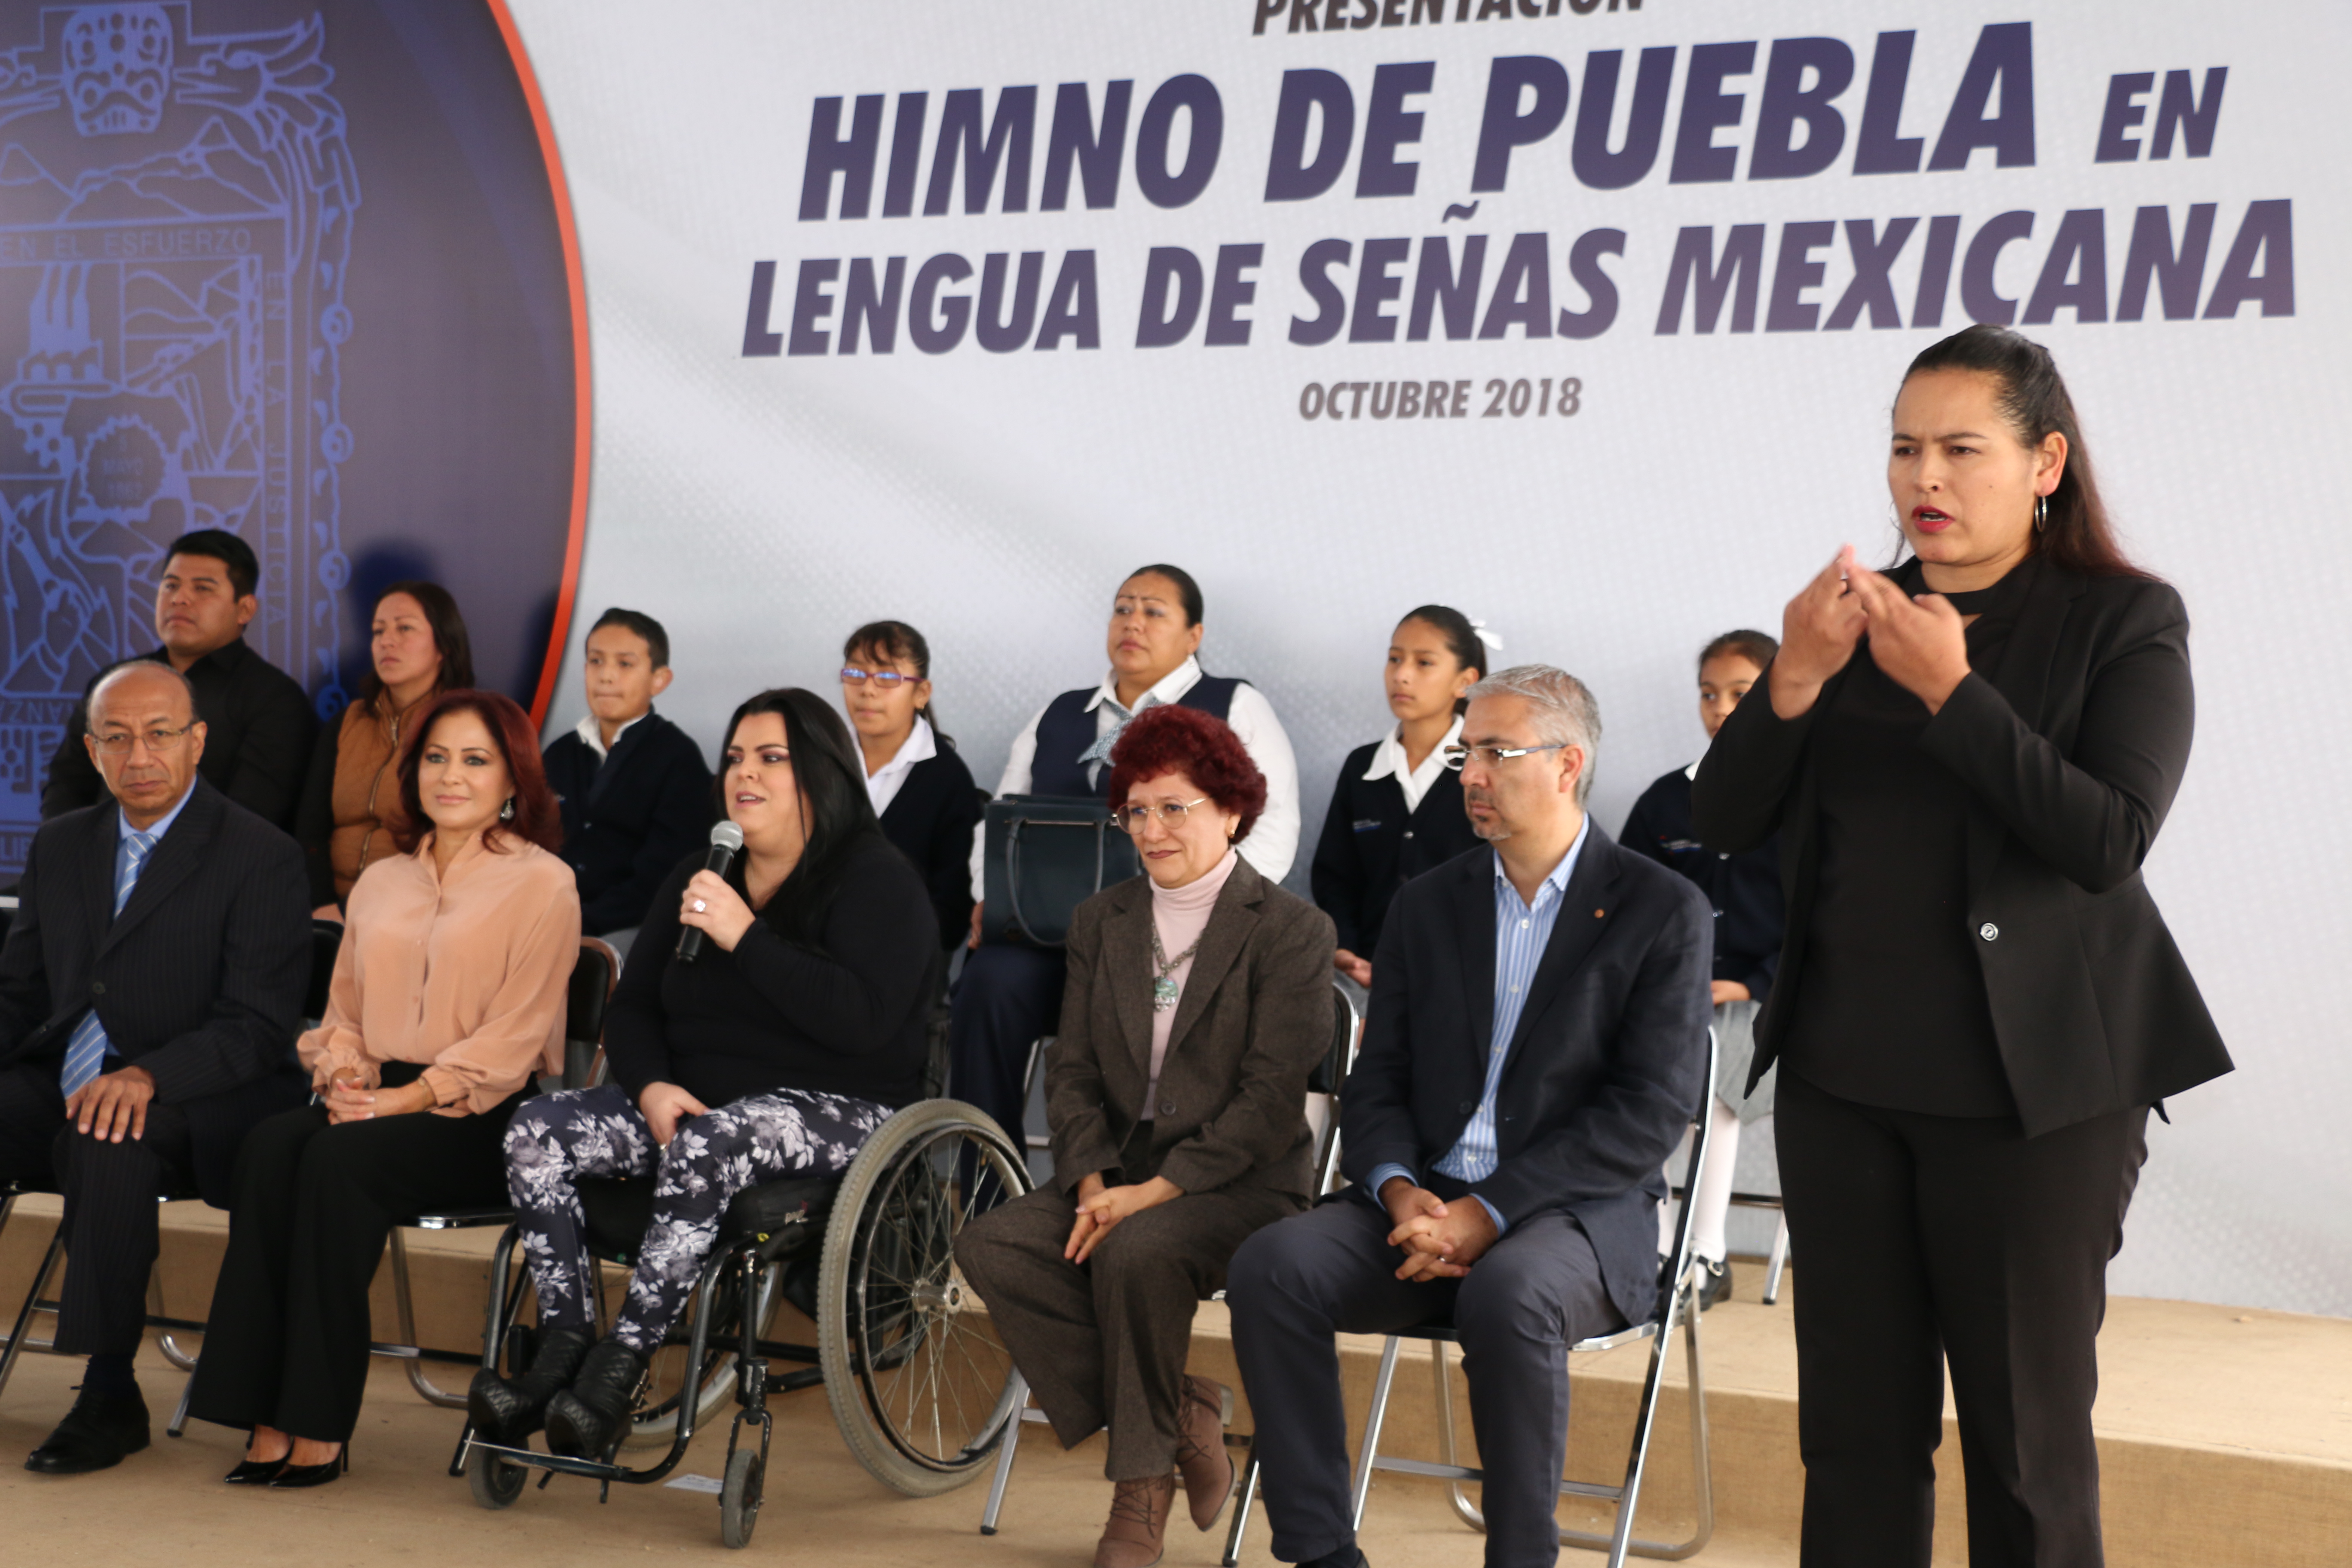 Dinorah López de Gali presenta el himno de Puebla en lengua de señas mexicana